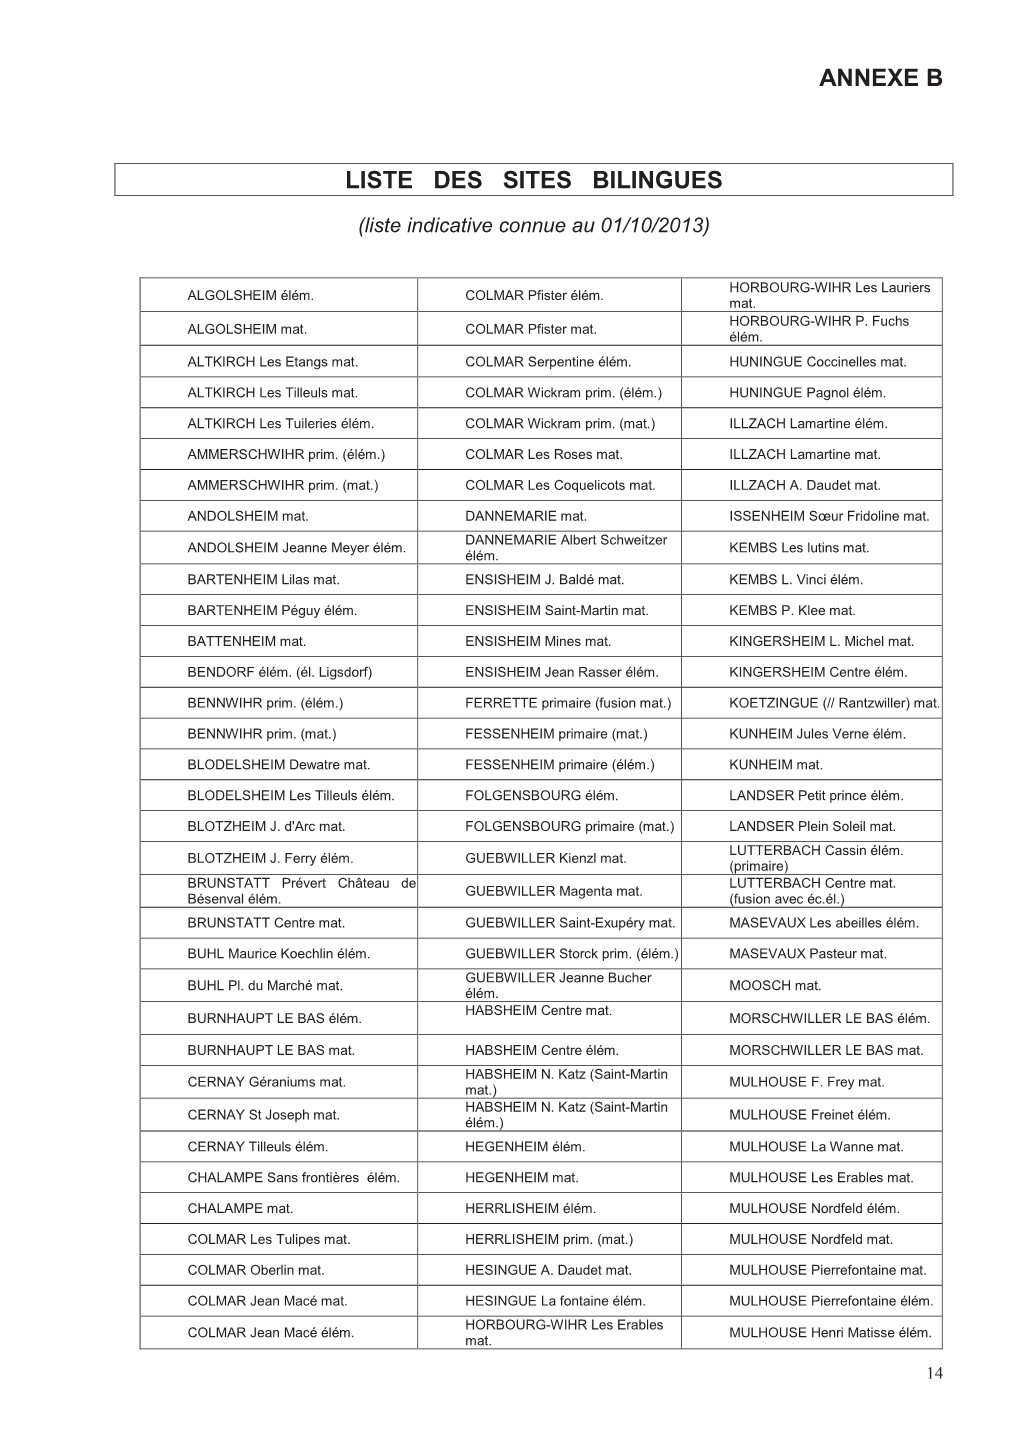 Annexe B Liste Sites Bilingues